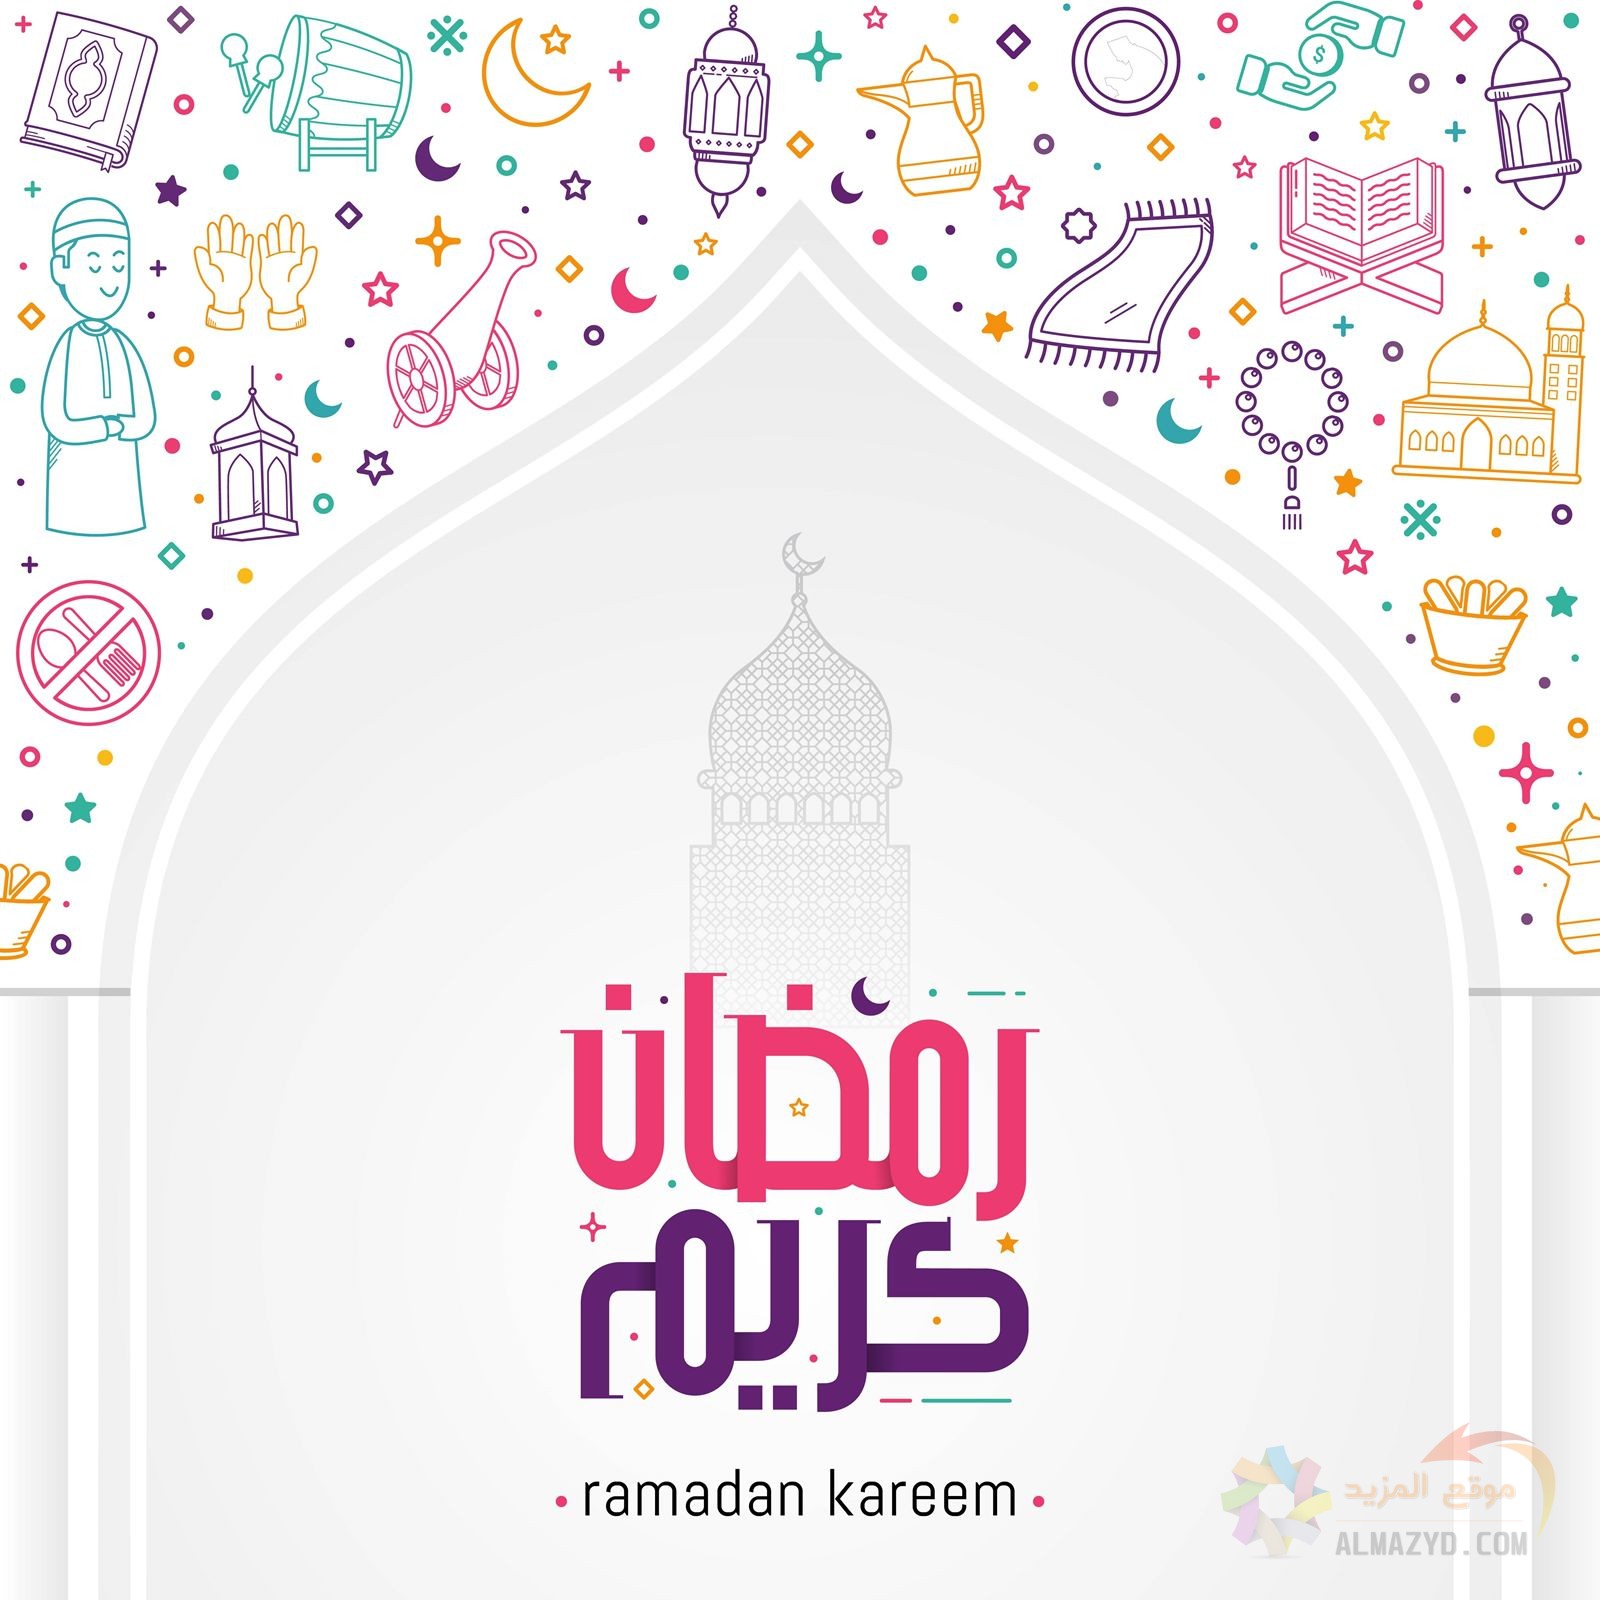 أجمل ١٠ صور لشهر رمضان للمشاركة في السوشيال ميديا